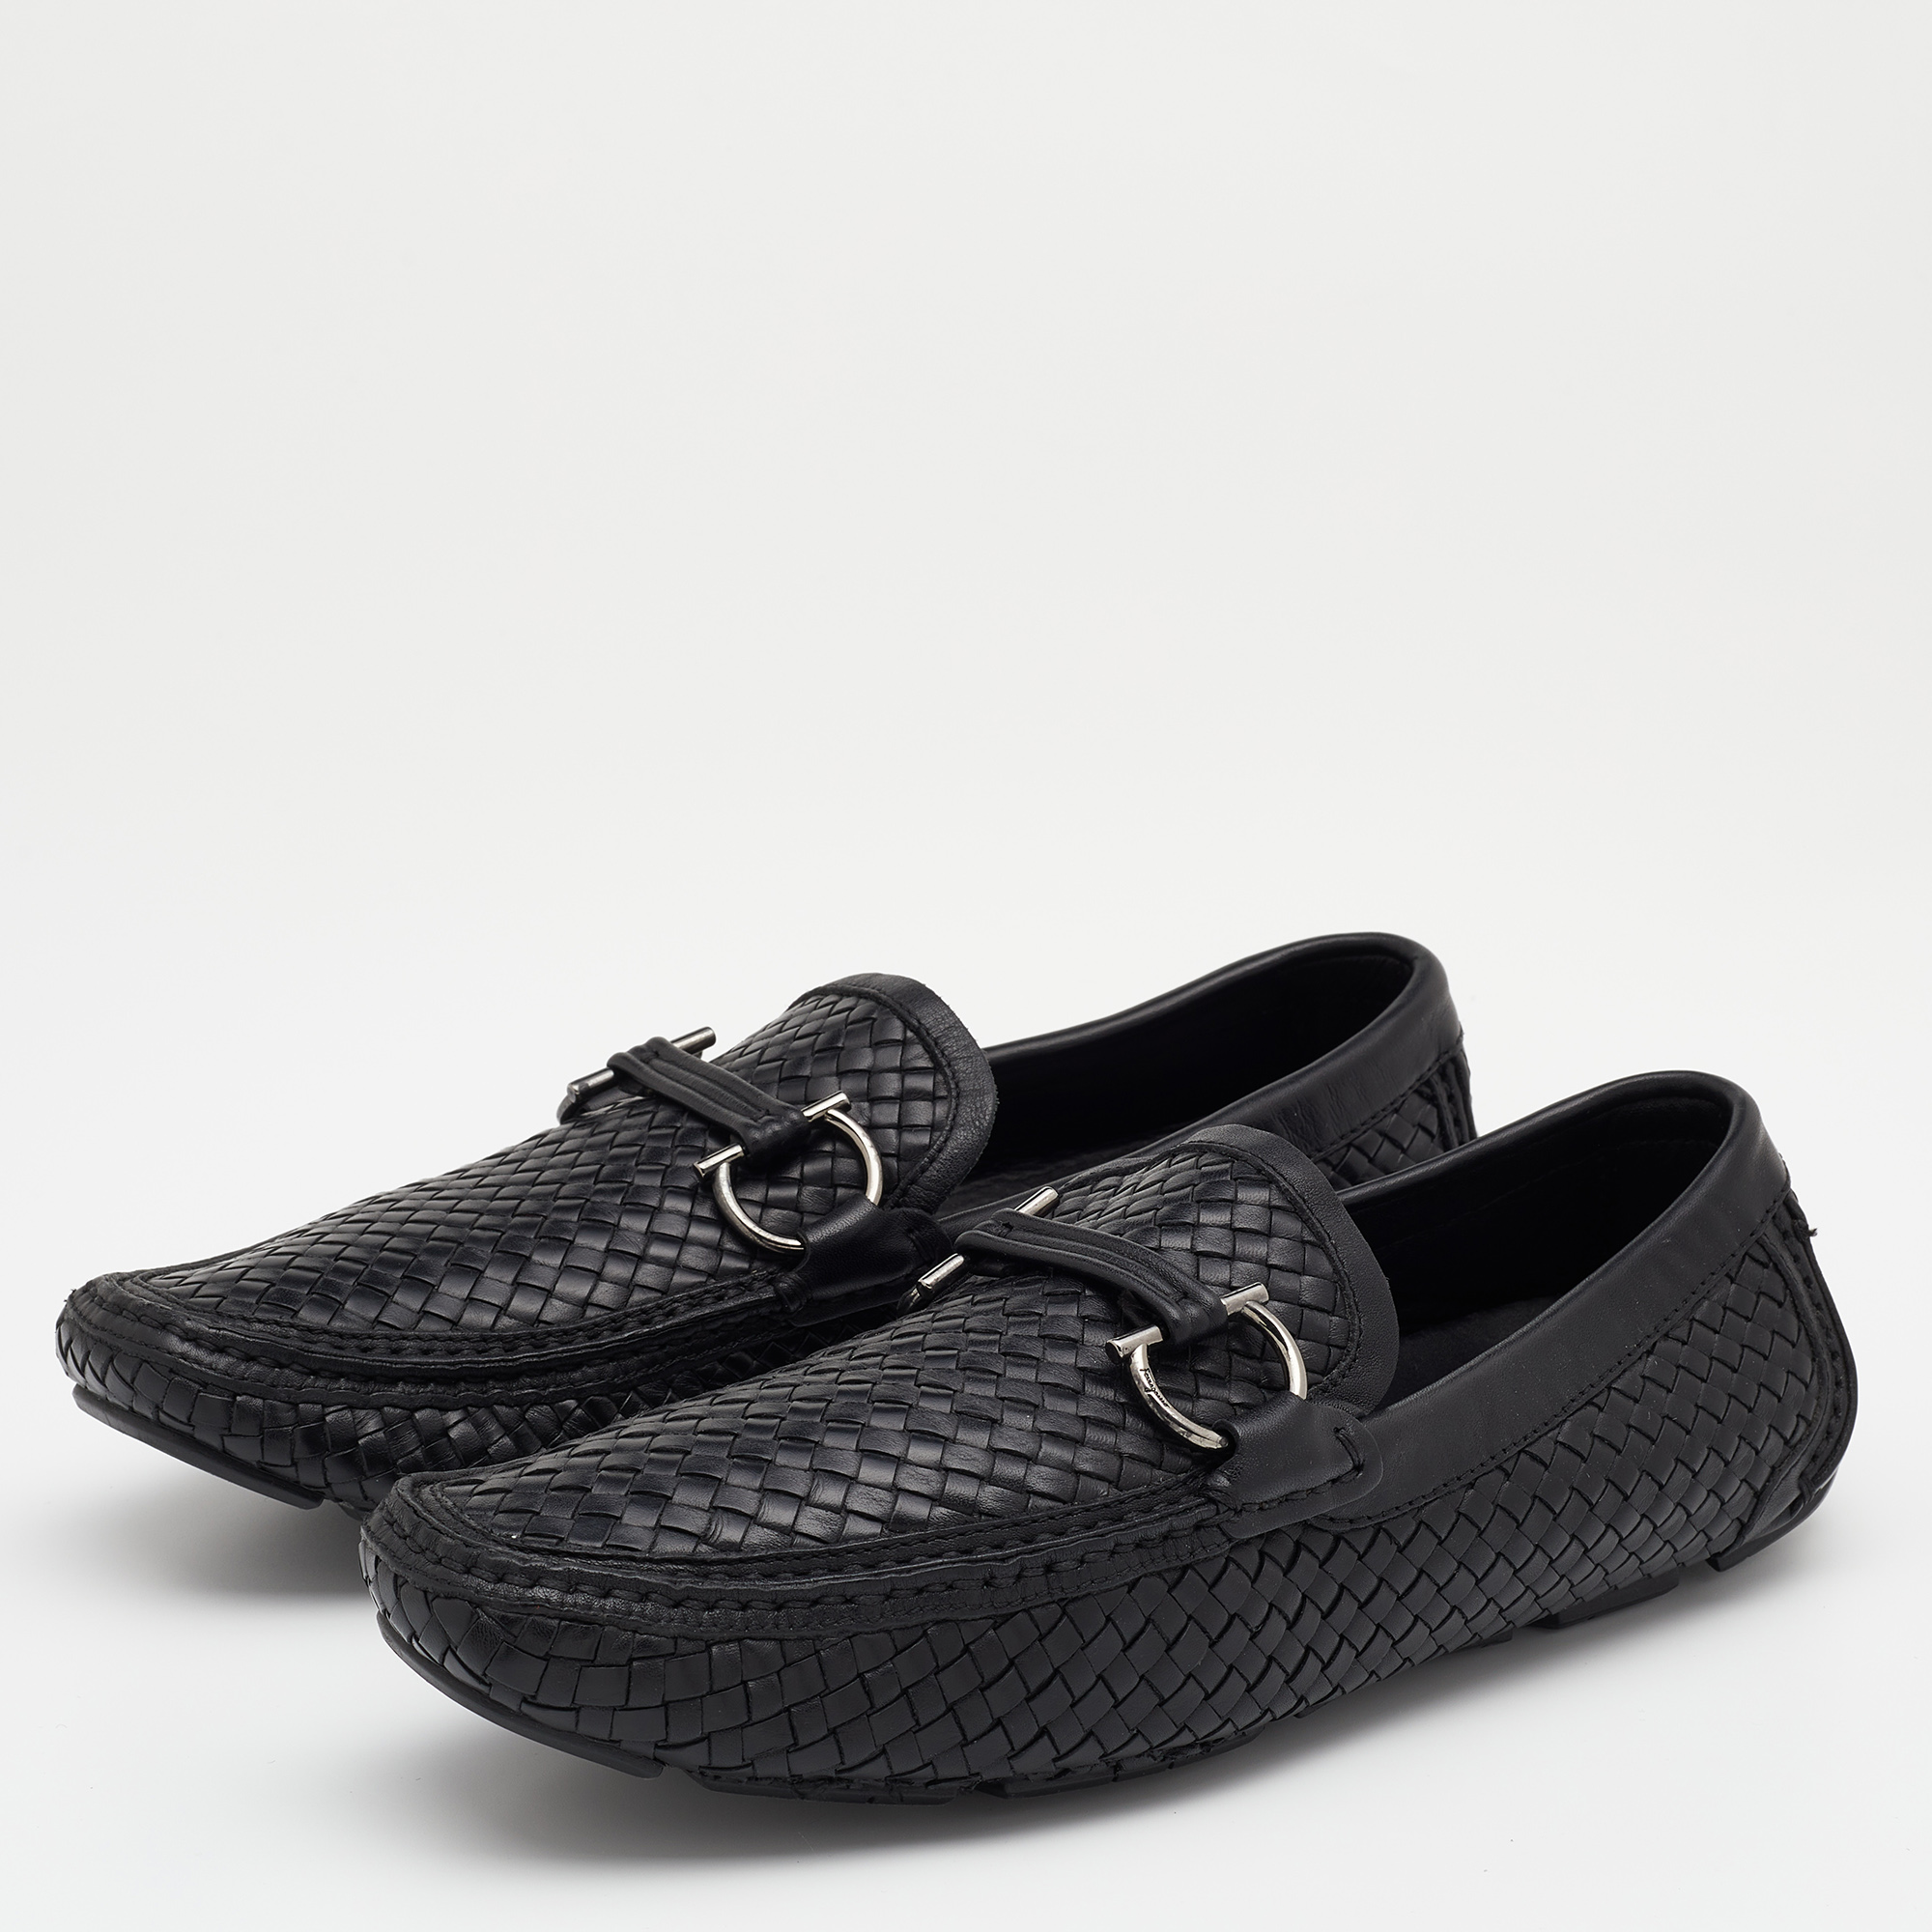 

Salvatore Ferragamo Black Woven Leather Parigi Gancio Bit Loafers Size